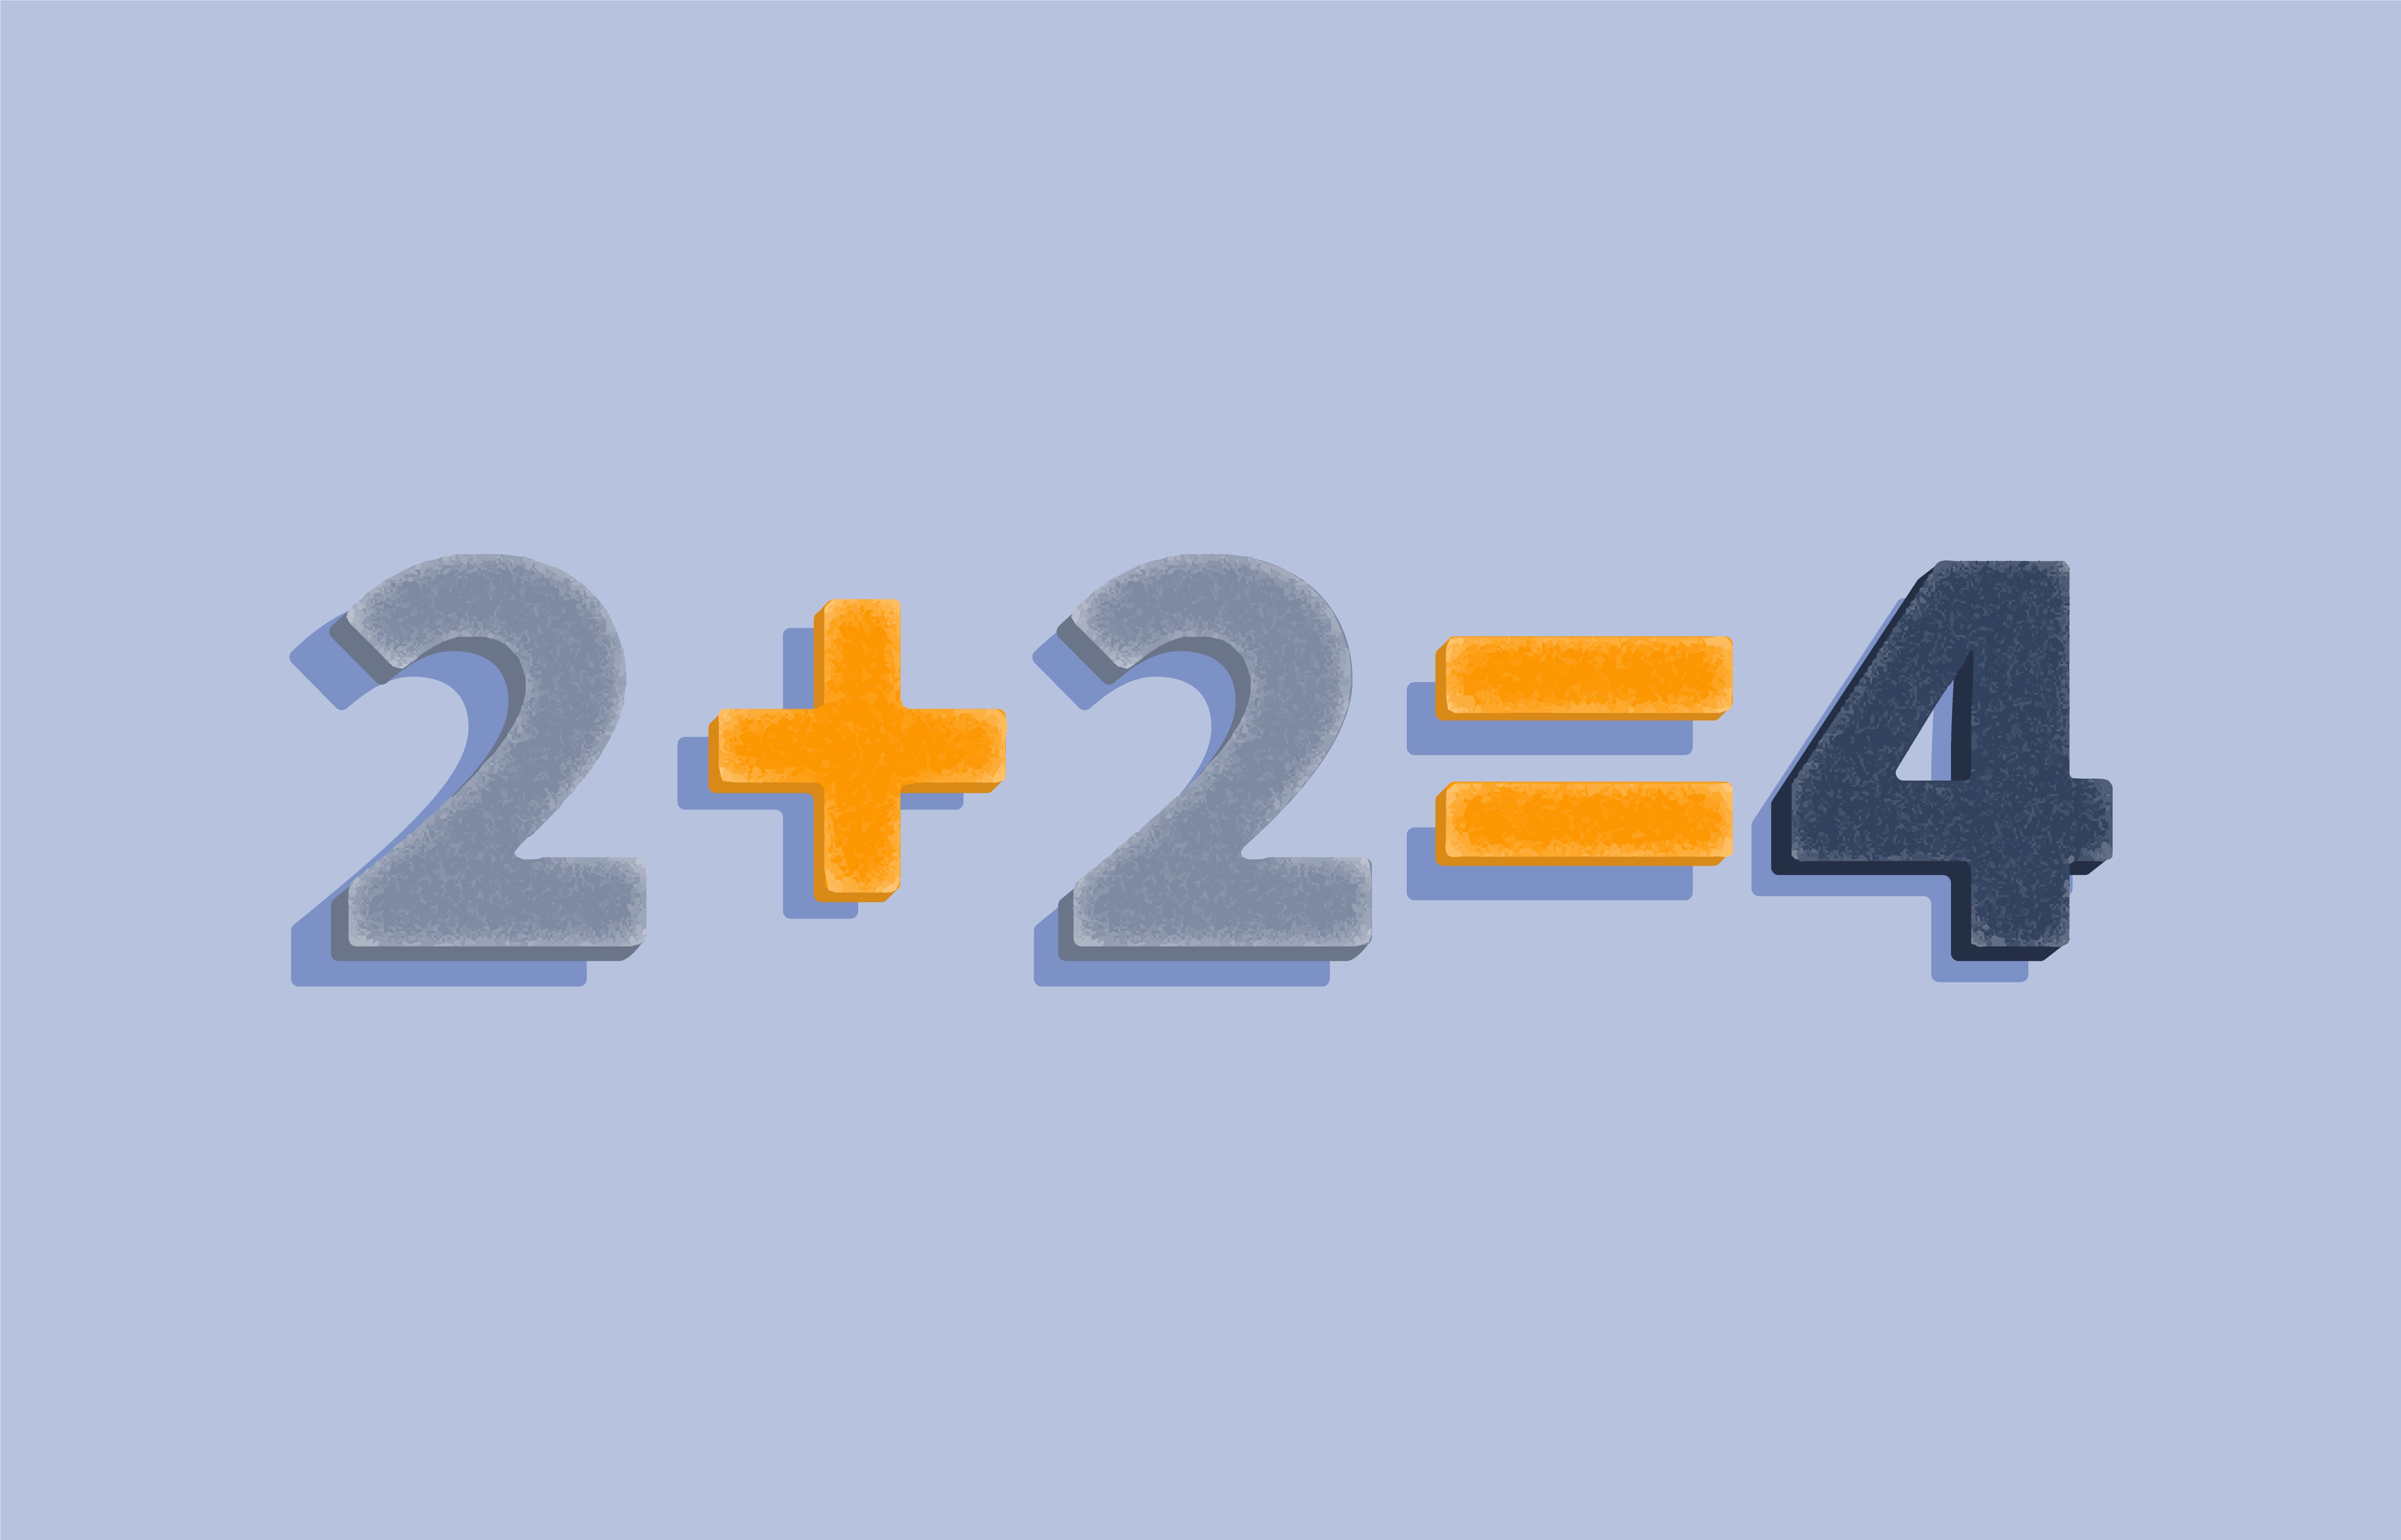 2 2 не всегда равно 4. 2 Плюс 2 равно 4. Два плюс два равно четыре. Картинки два плюс два равно четыре. Картинка 4 плюс 2.